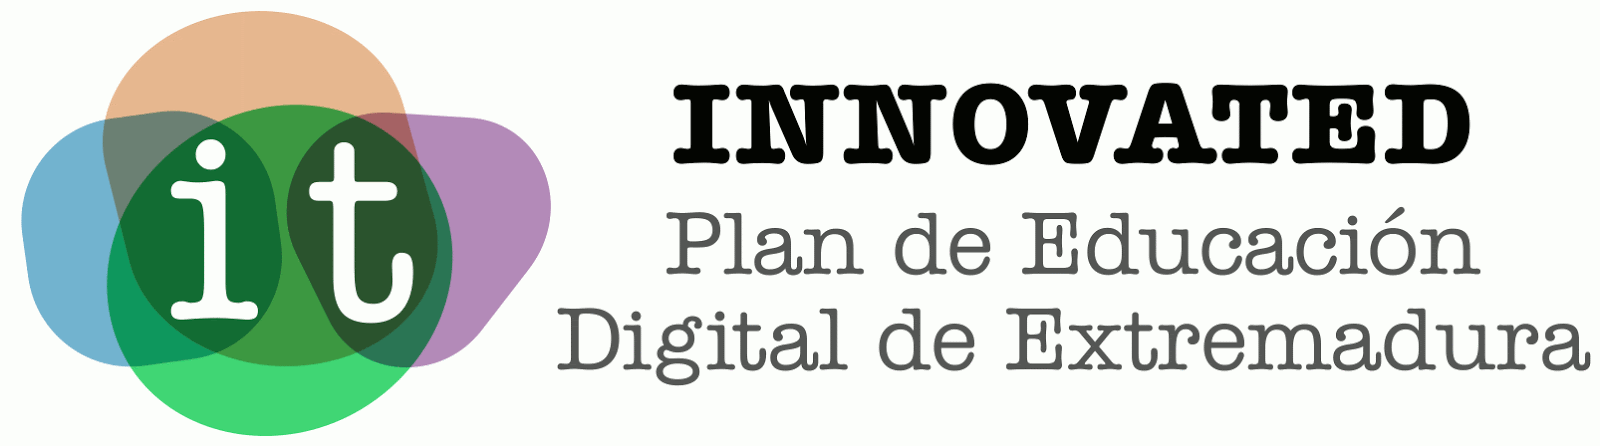 INNOVATED Plan de Educación Digital de Extremadura